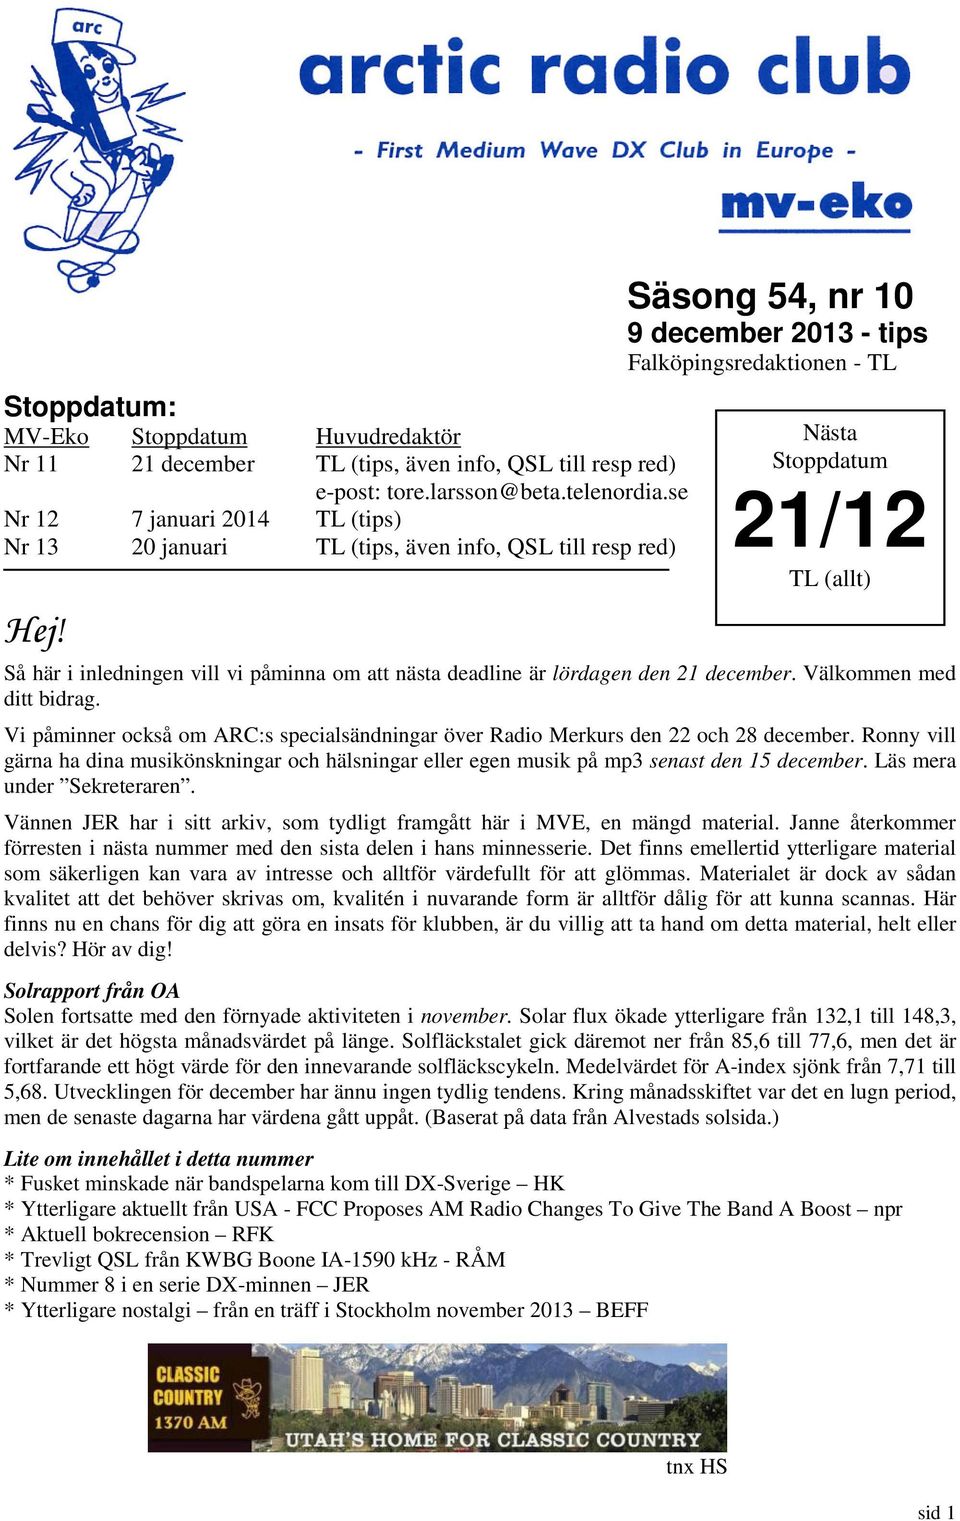 Säsong 54, nr 10 9 december 2013 - tips Falköpingsredaktionen - TL Nästa Stoppdatum 21/12 TL (allt) Så här i inledningen vill vi påminna om att nästa deadline är lördagen den 21 december.